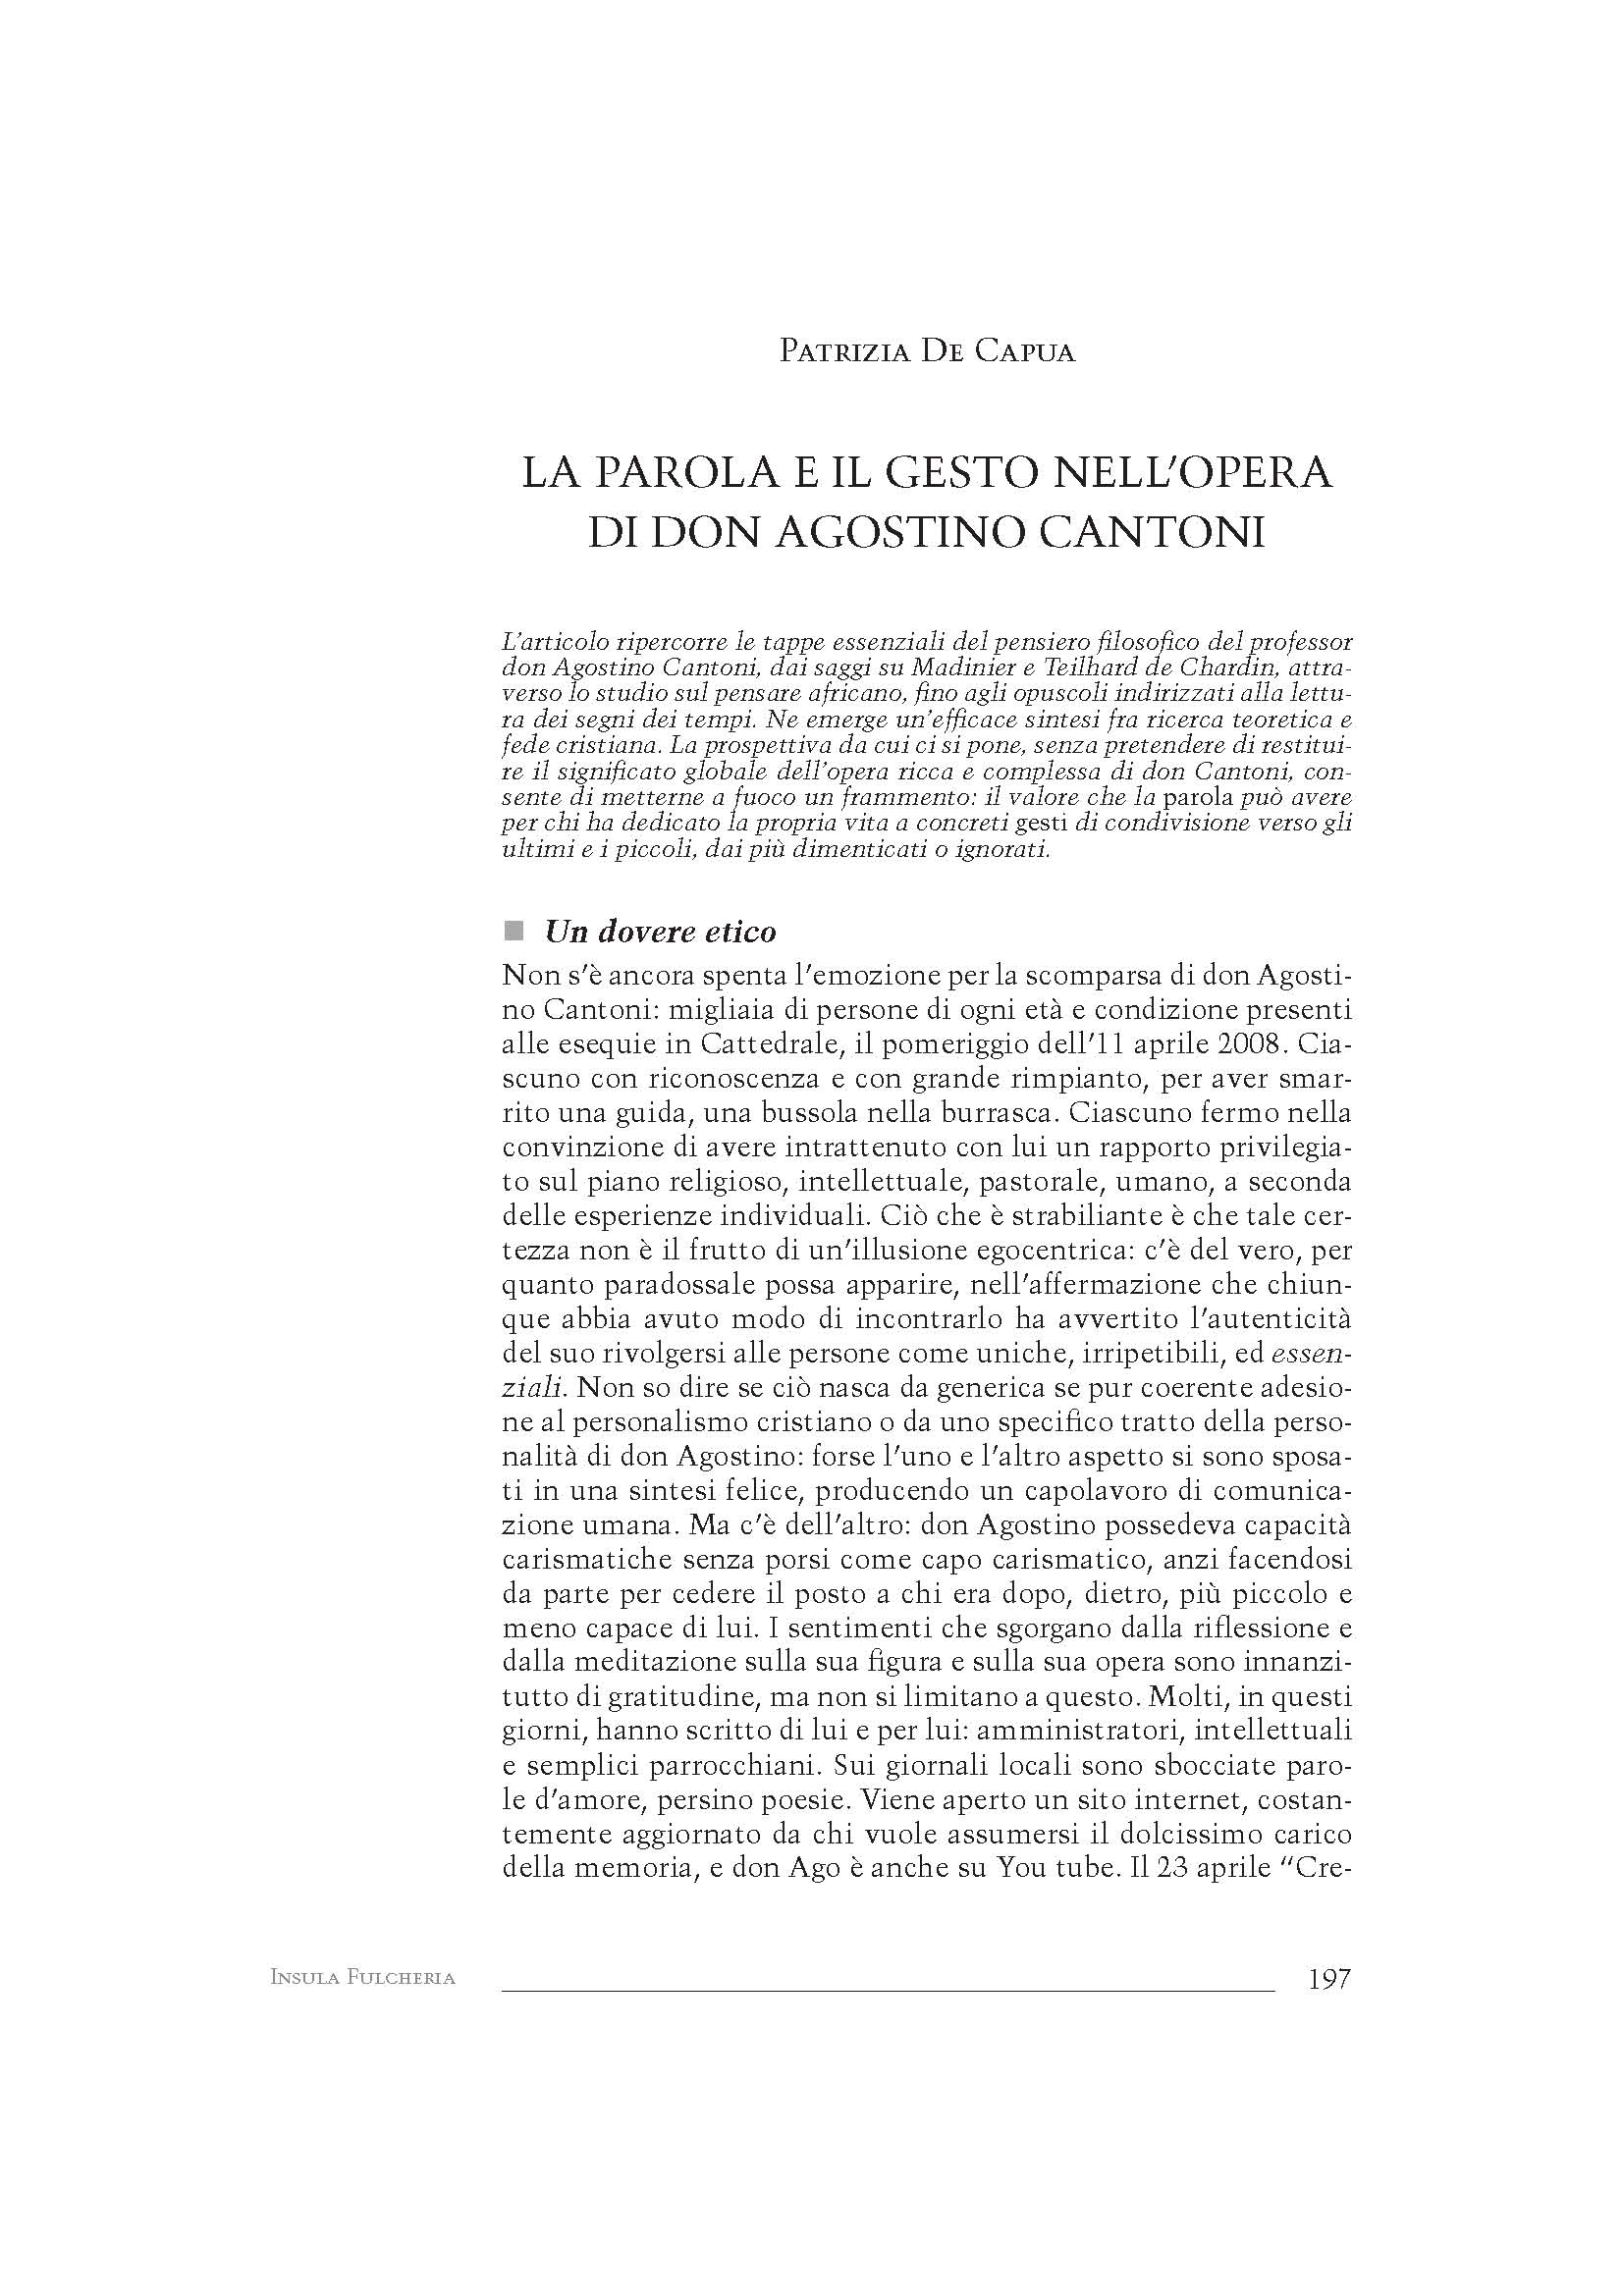 Insula_Fulcheria_De_Capua_don_Agostino_Cantoni_parola_e_gesto.pdf